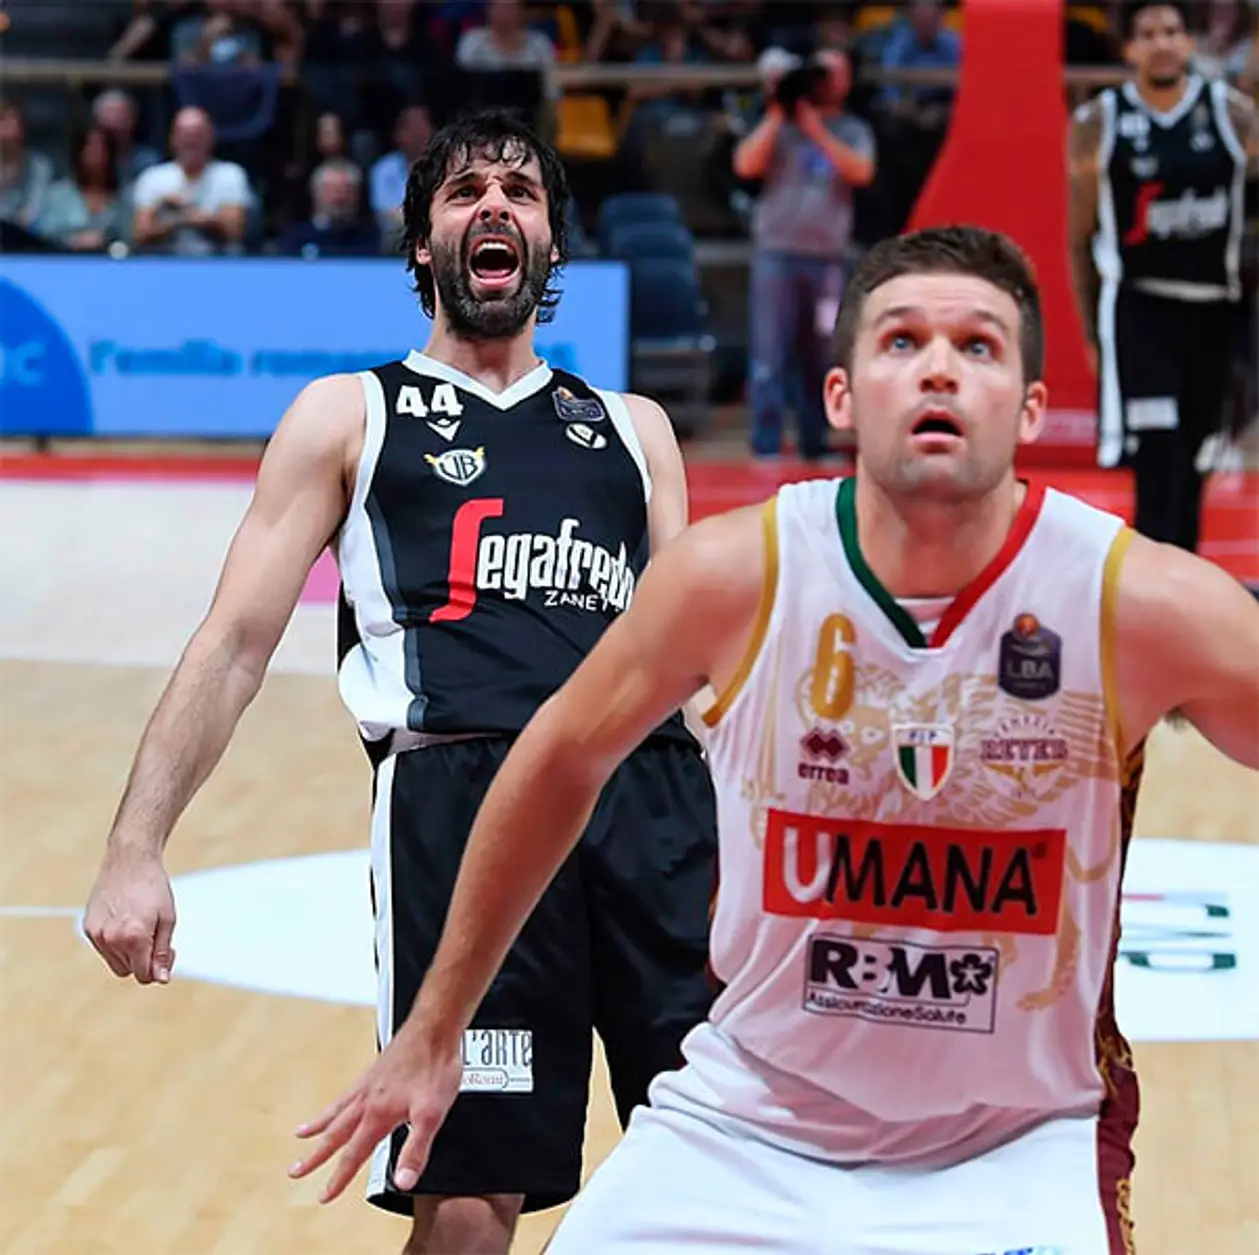 Милош Теодосич убеждает в ренессансе итальянского баскетбола. Скоро у Италии будет два клуба Евролиги 